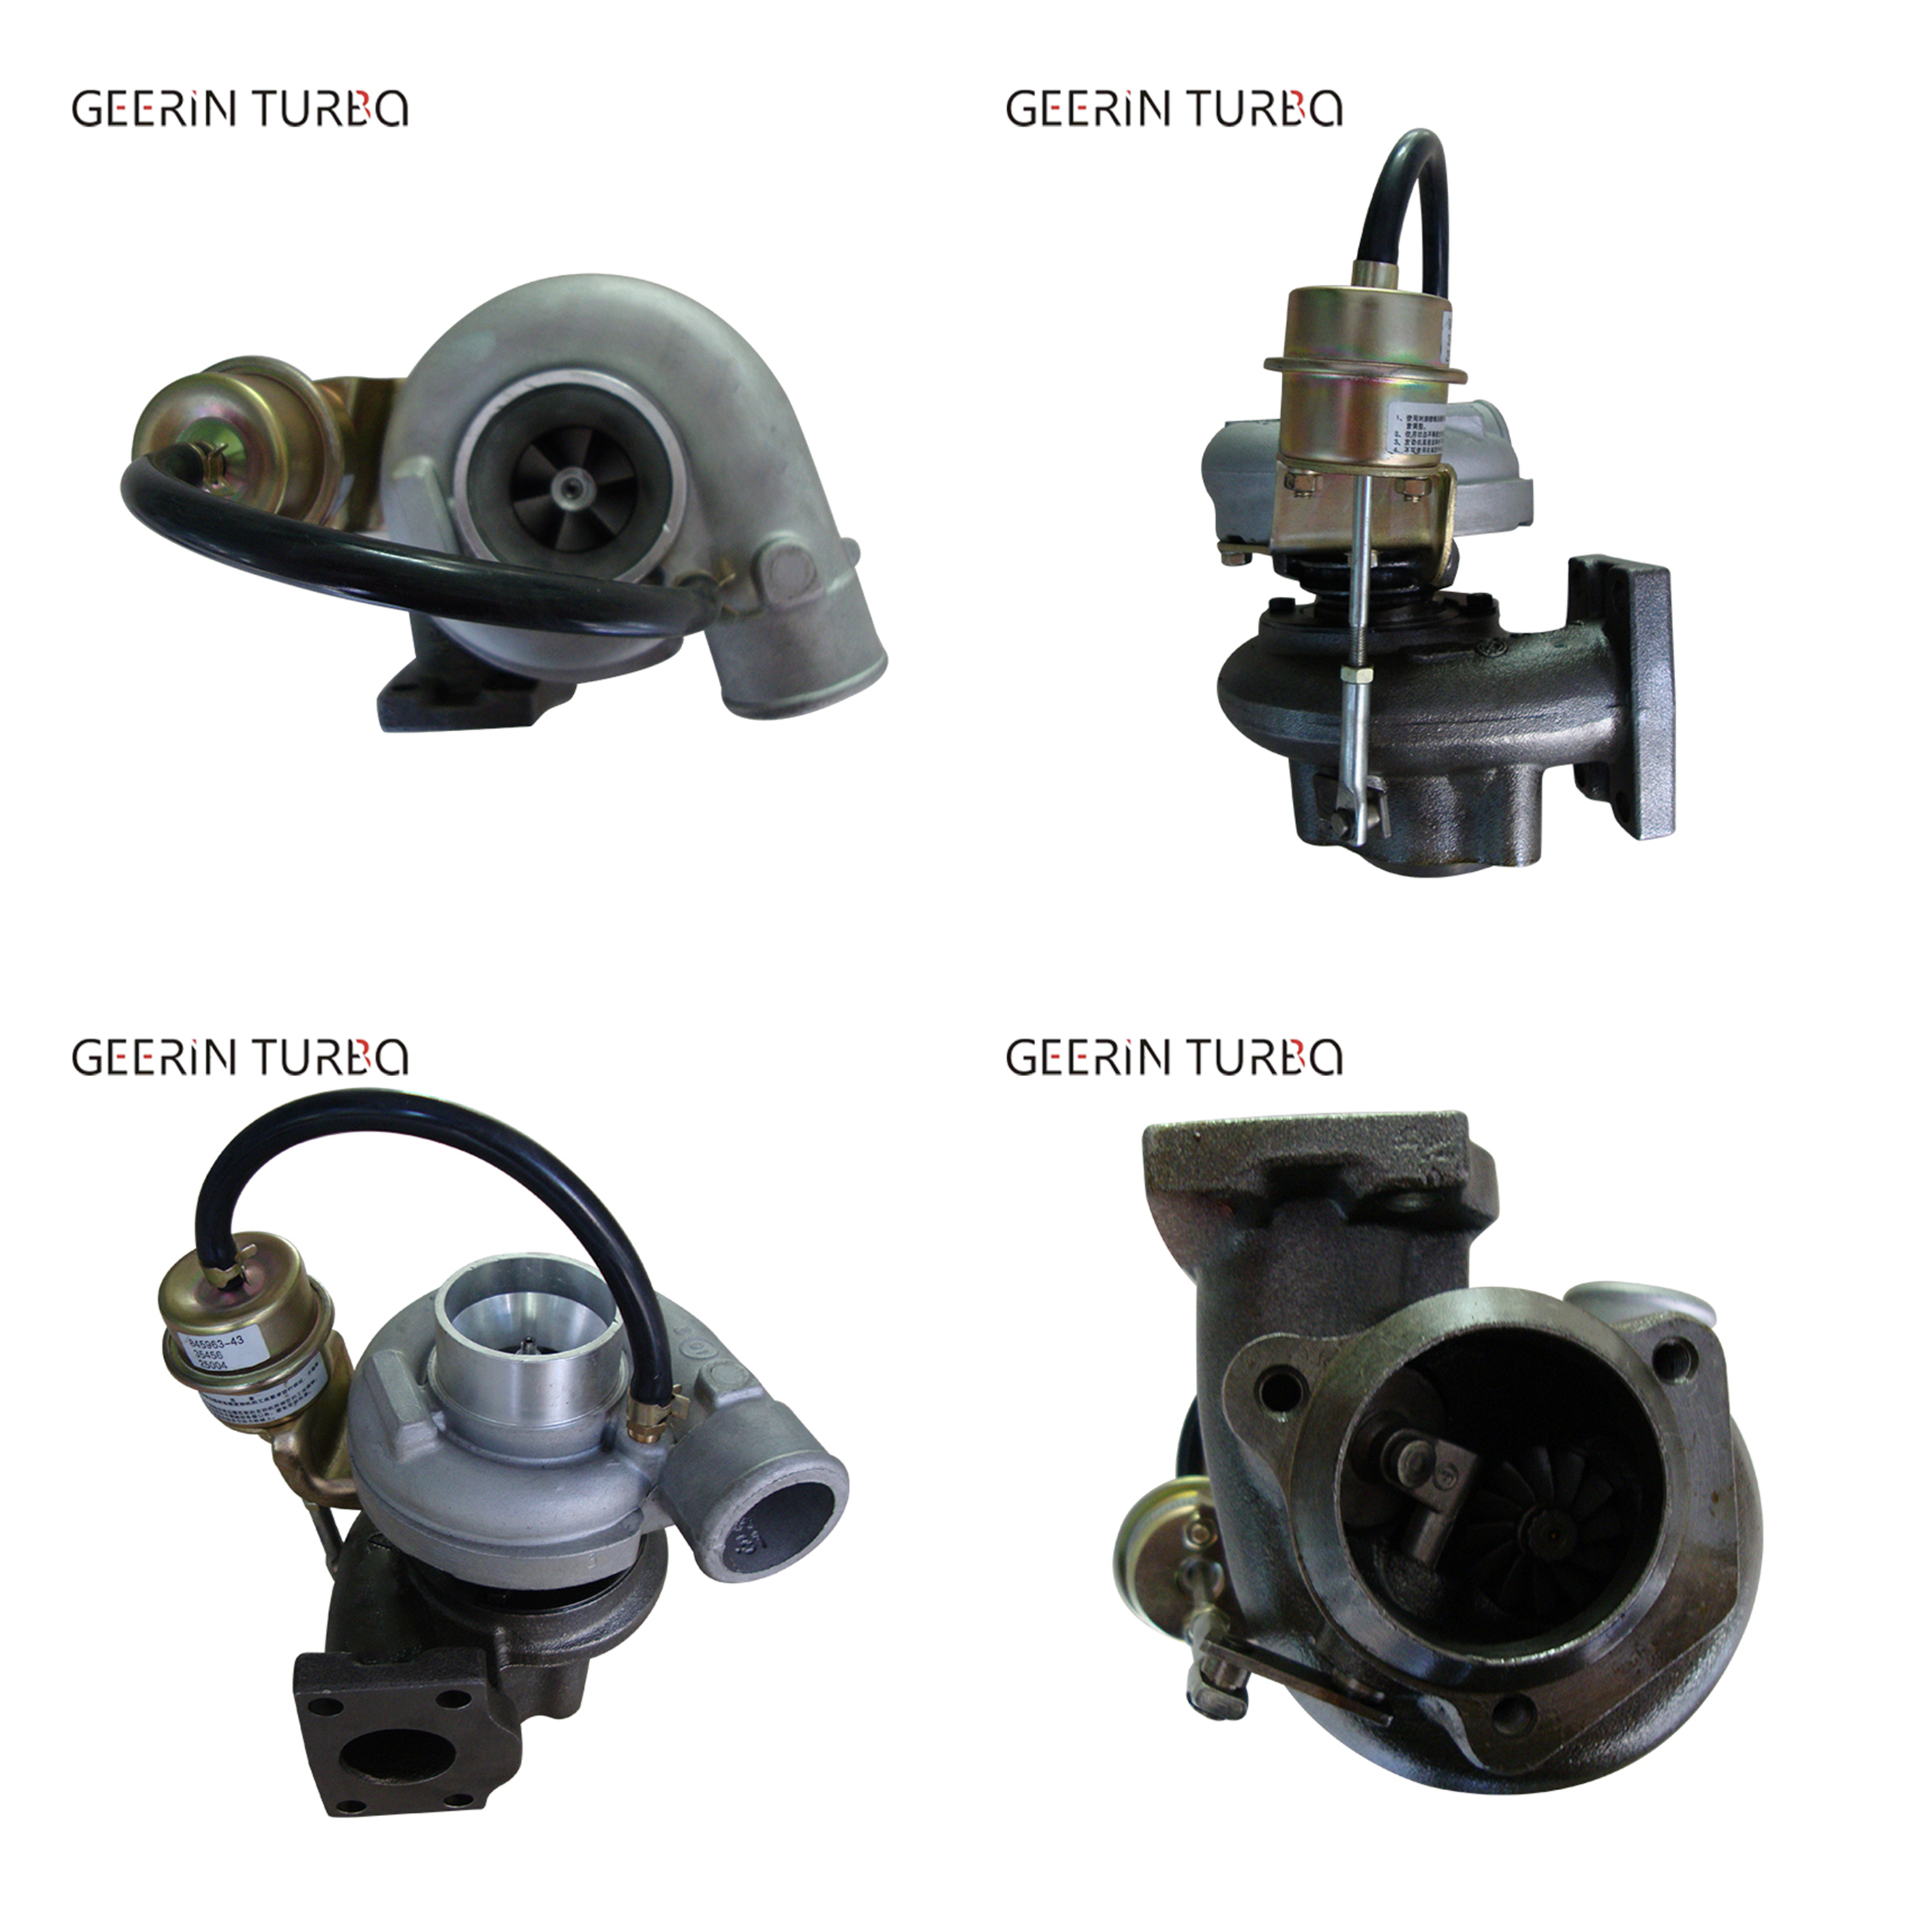 Kaufen GT2052S 452083-5001S Turbolader Turbolader für Saab 9000 2,0;GT2052S 452083-5001S Turbolader Turbolader für Saab 9000 2,0 Preis;GT2052S 452083-5001S Turbolader Turbolader für Saab 9000 2,0 Marken;GT2052S 452083-5001S Turbolader Turbolader für Saab 9000 2,0 Hersteller;GT2052S 452083-5001S Turbolader Turbolader für Saab 9000 2,0 Zitat;GT2052S 452083-5001S Turbolader Turbolader für Saab 9000 2,0 Unternehmen